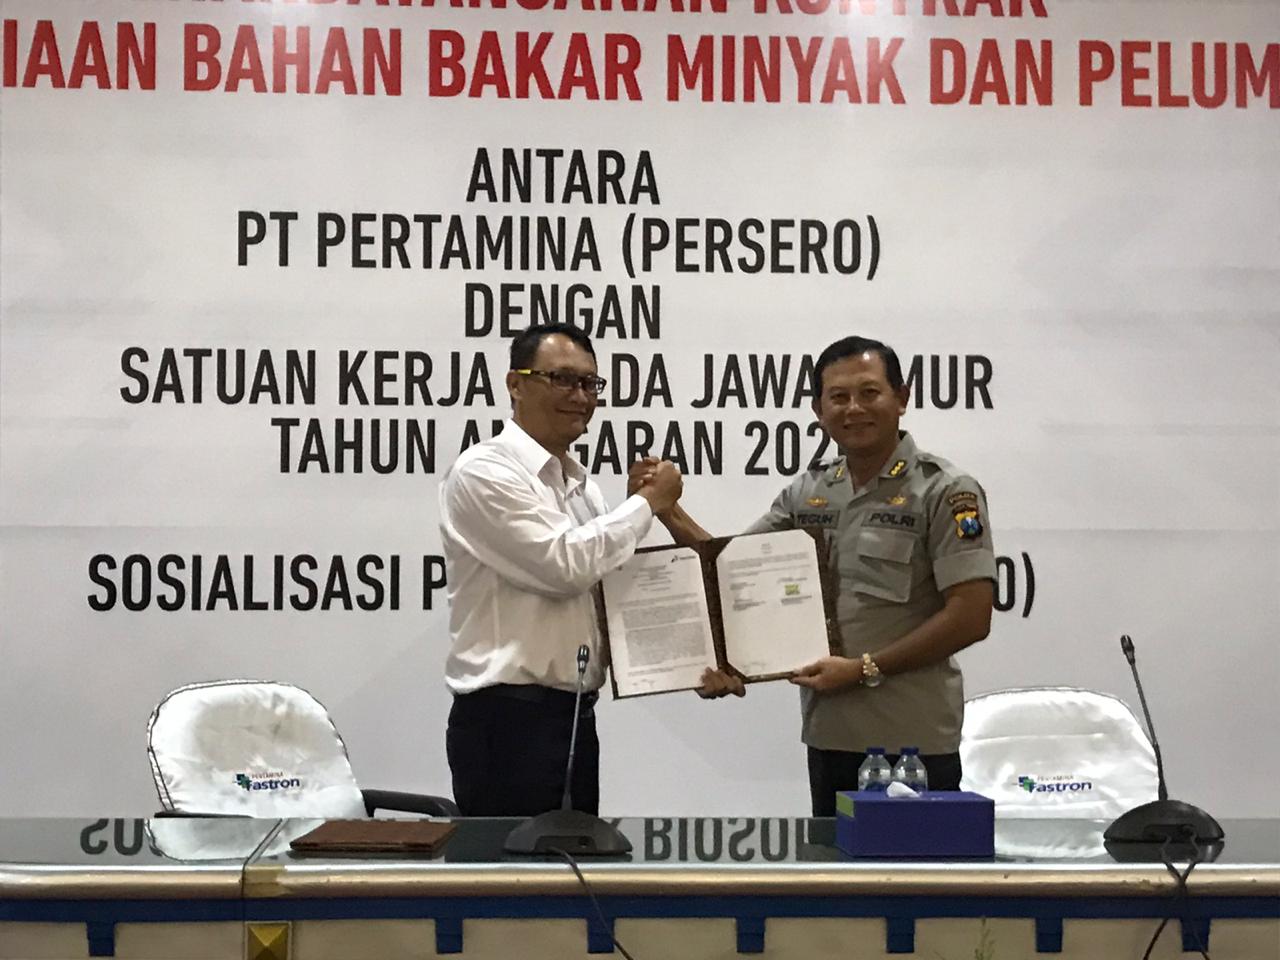 Pertamina Siapkan BBM dan Pelumas serta Sosialisasi B30 untuk Kepolisian Daerah Jawa Timur